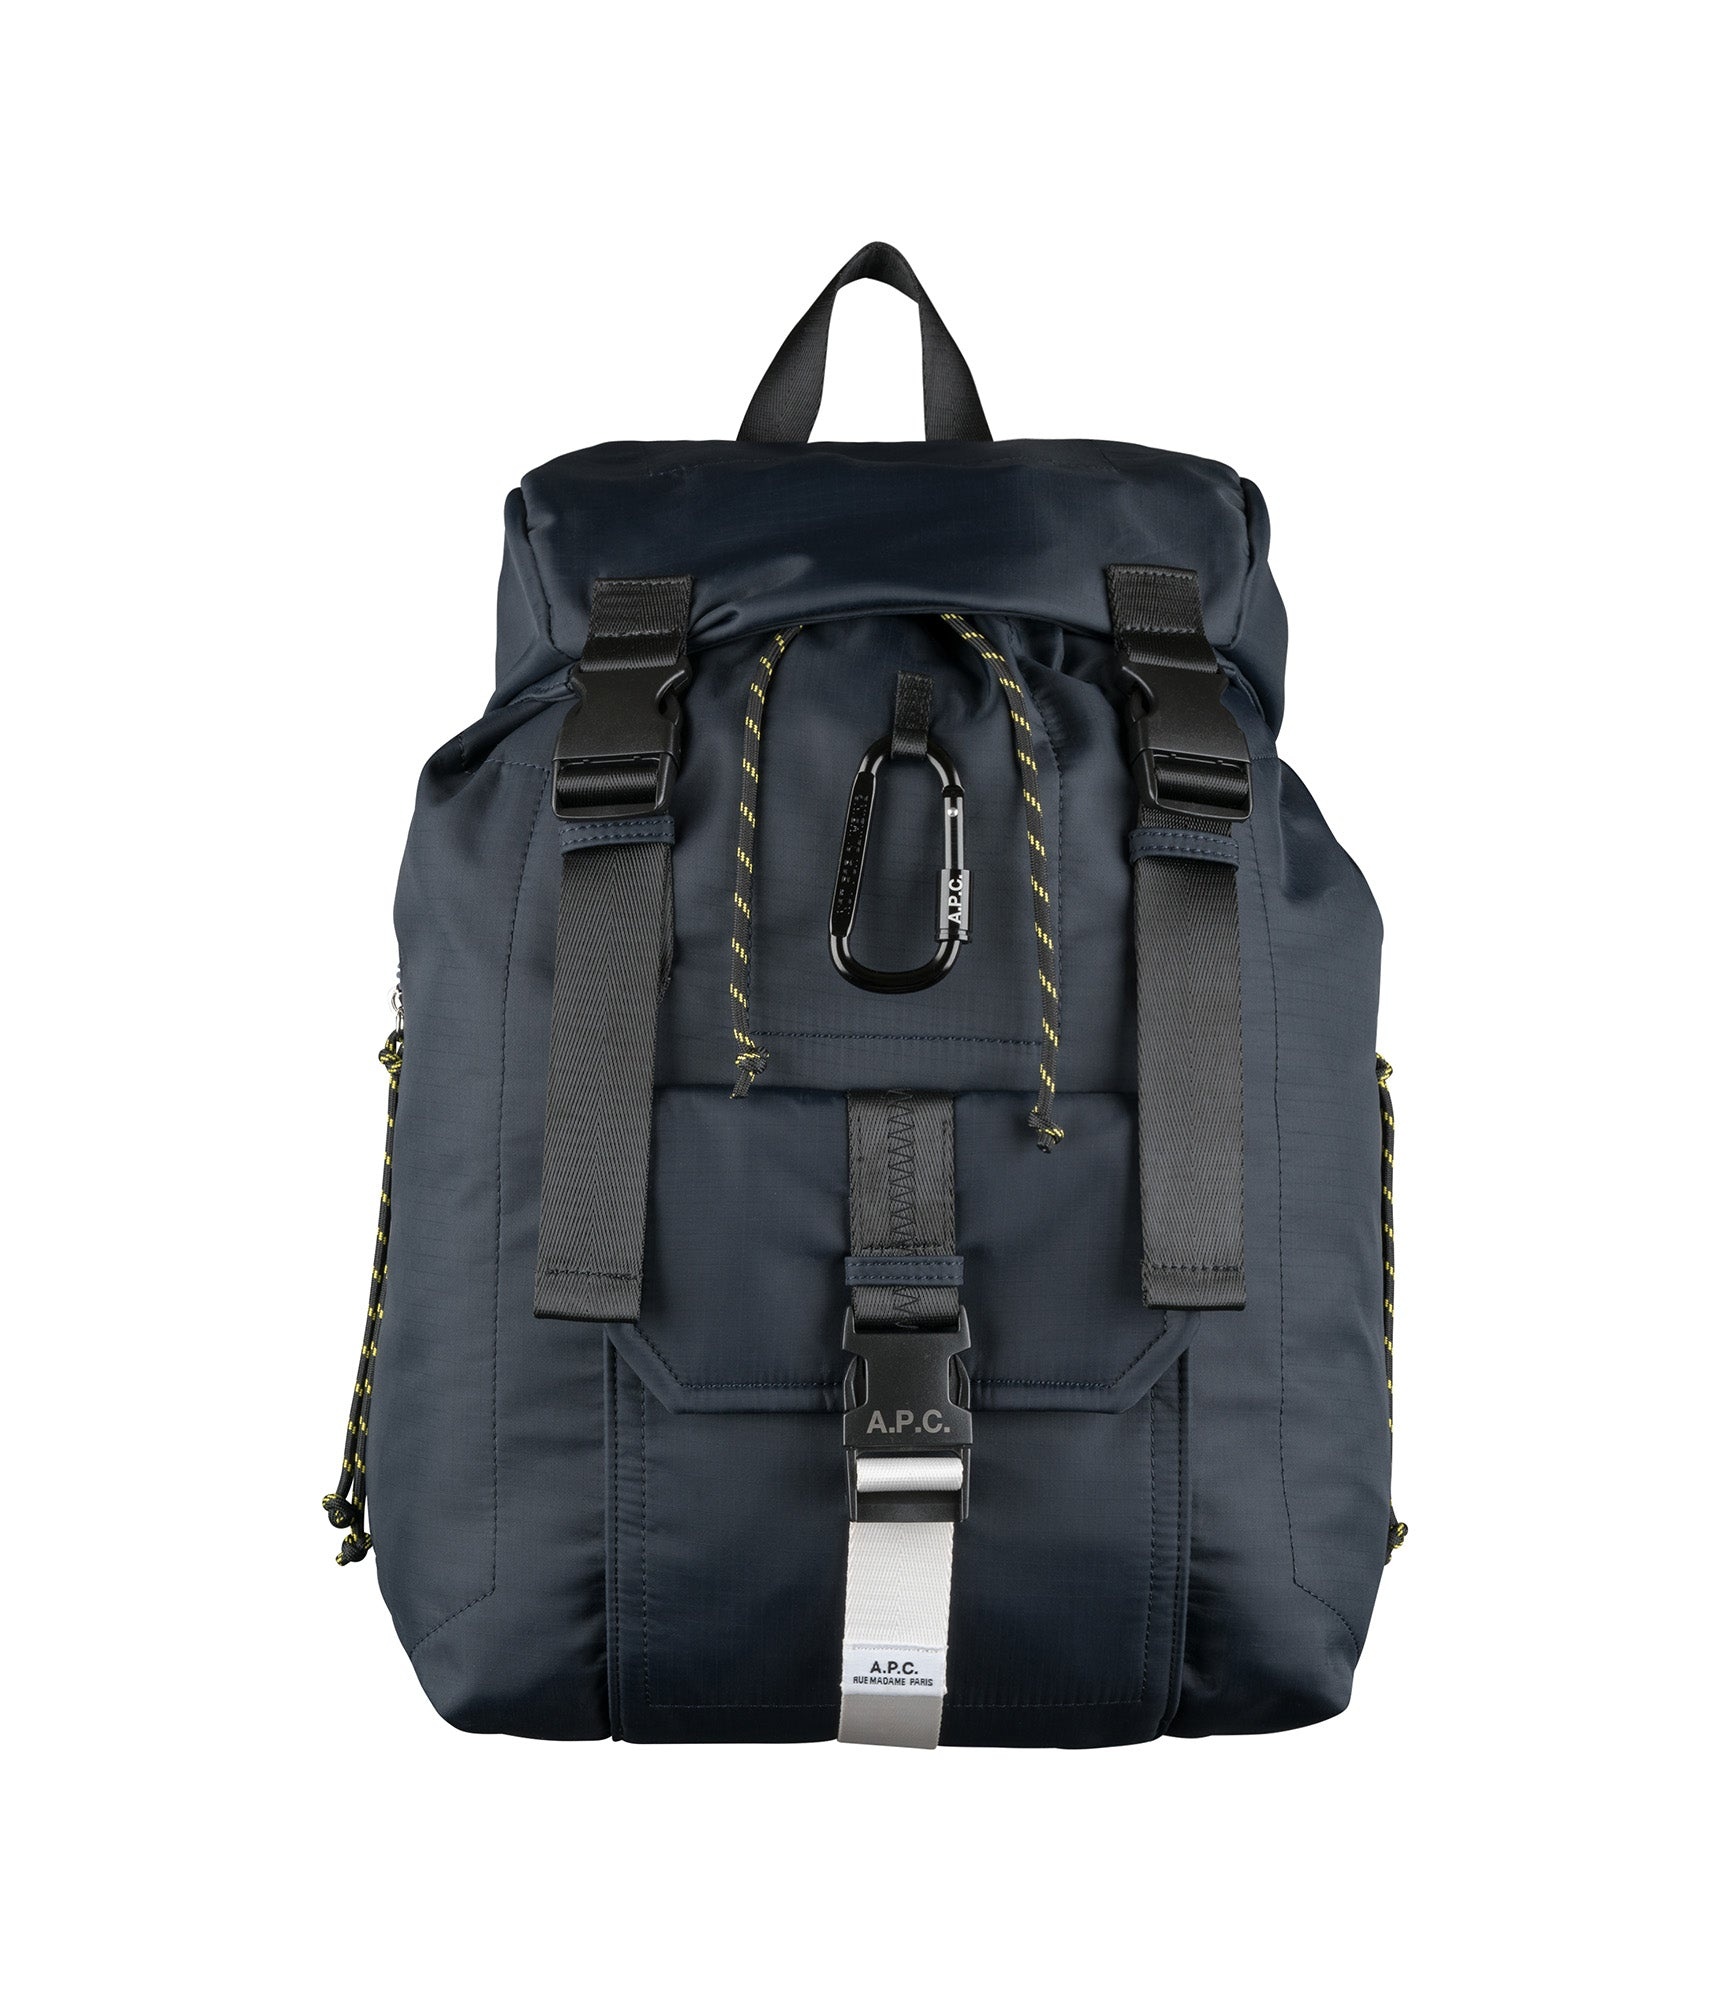 Treck backpack - 1